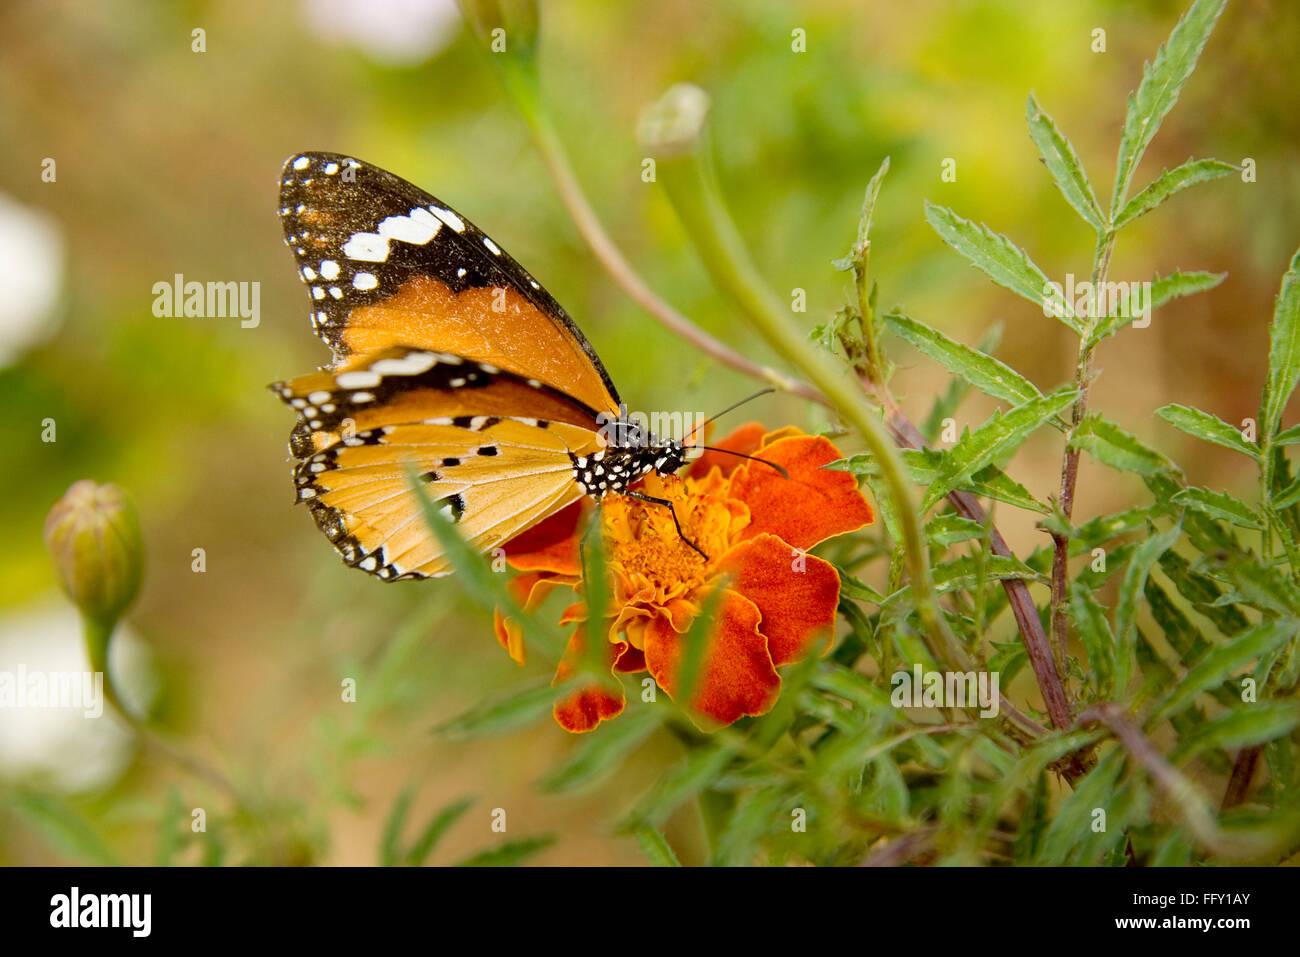 Tigre de plaine, Danaus chrysippus, reine africaine, monarque africain, papillon suçant le nectar de fleur Banque D'Images